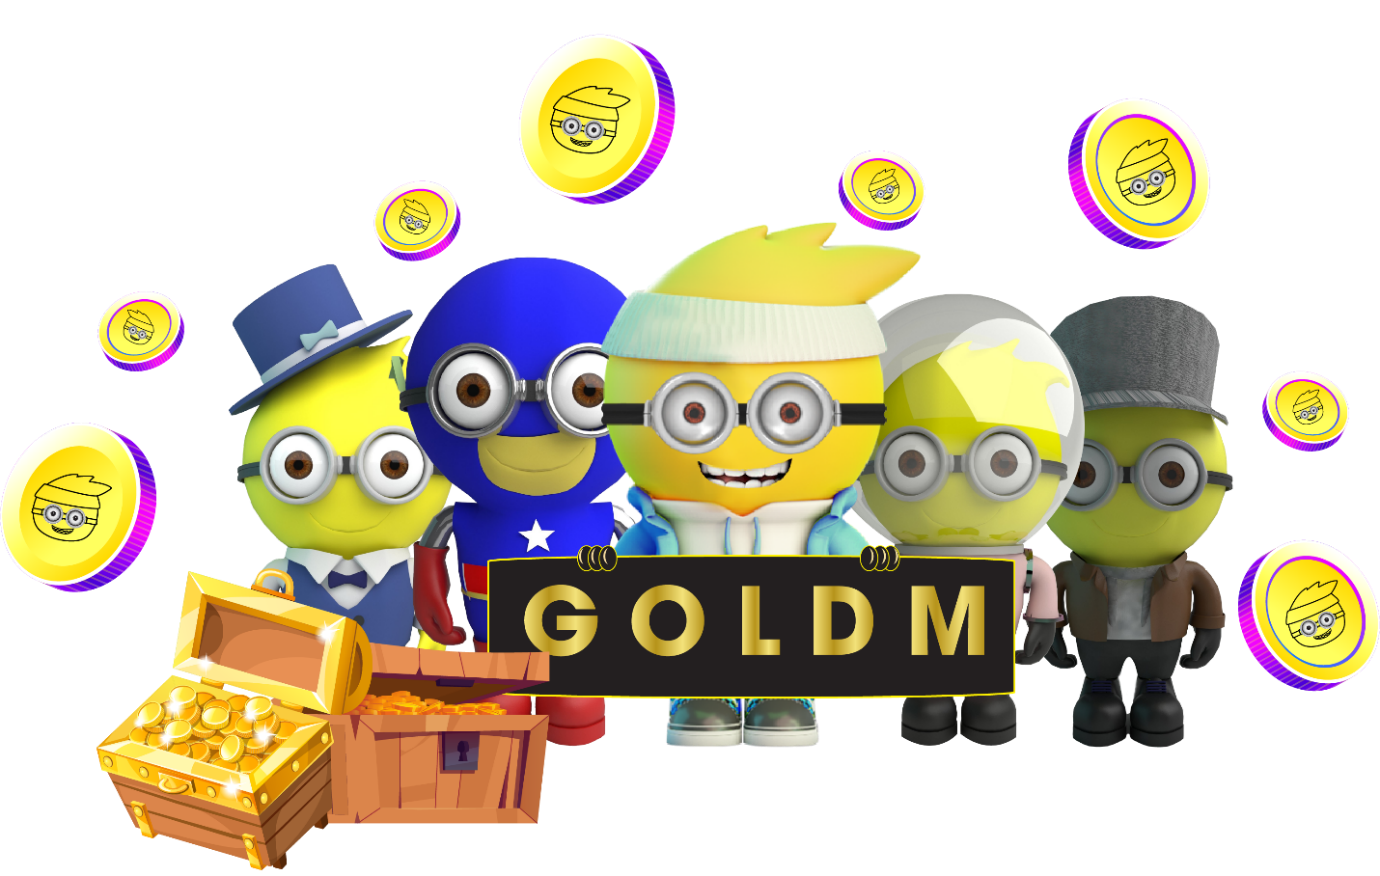 Golden Planet - Trải nghiệm chơi để kiếm tiền thú vị mới nhất dành cho người chơi - Tin tức CoinCu